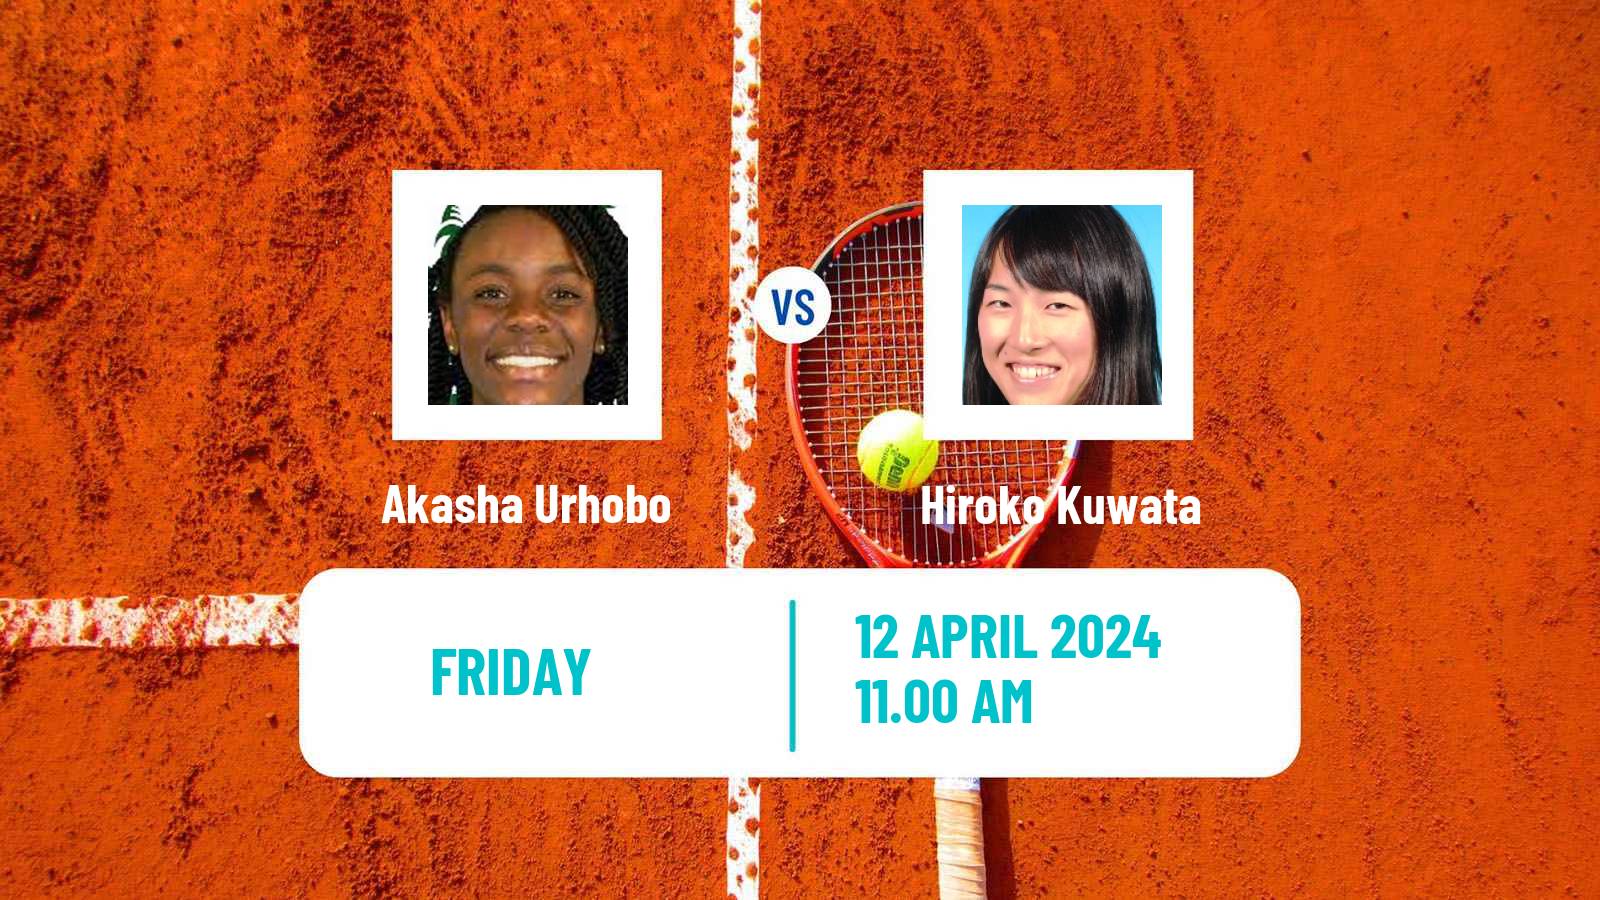 Tennis ITF W35 Boca Raton Fl Women Akasha Urhobo - Hiroko Kuwata